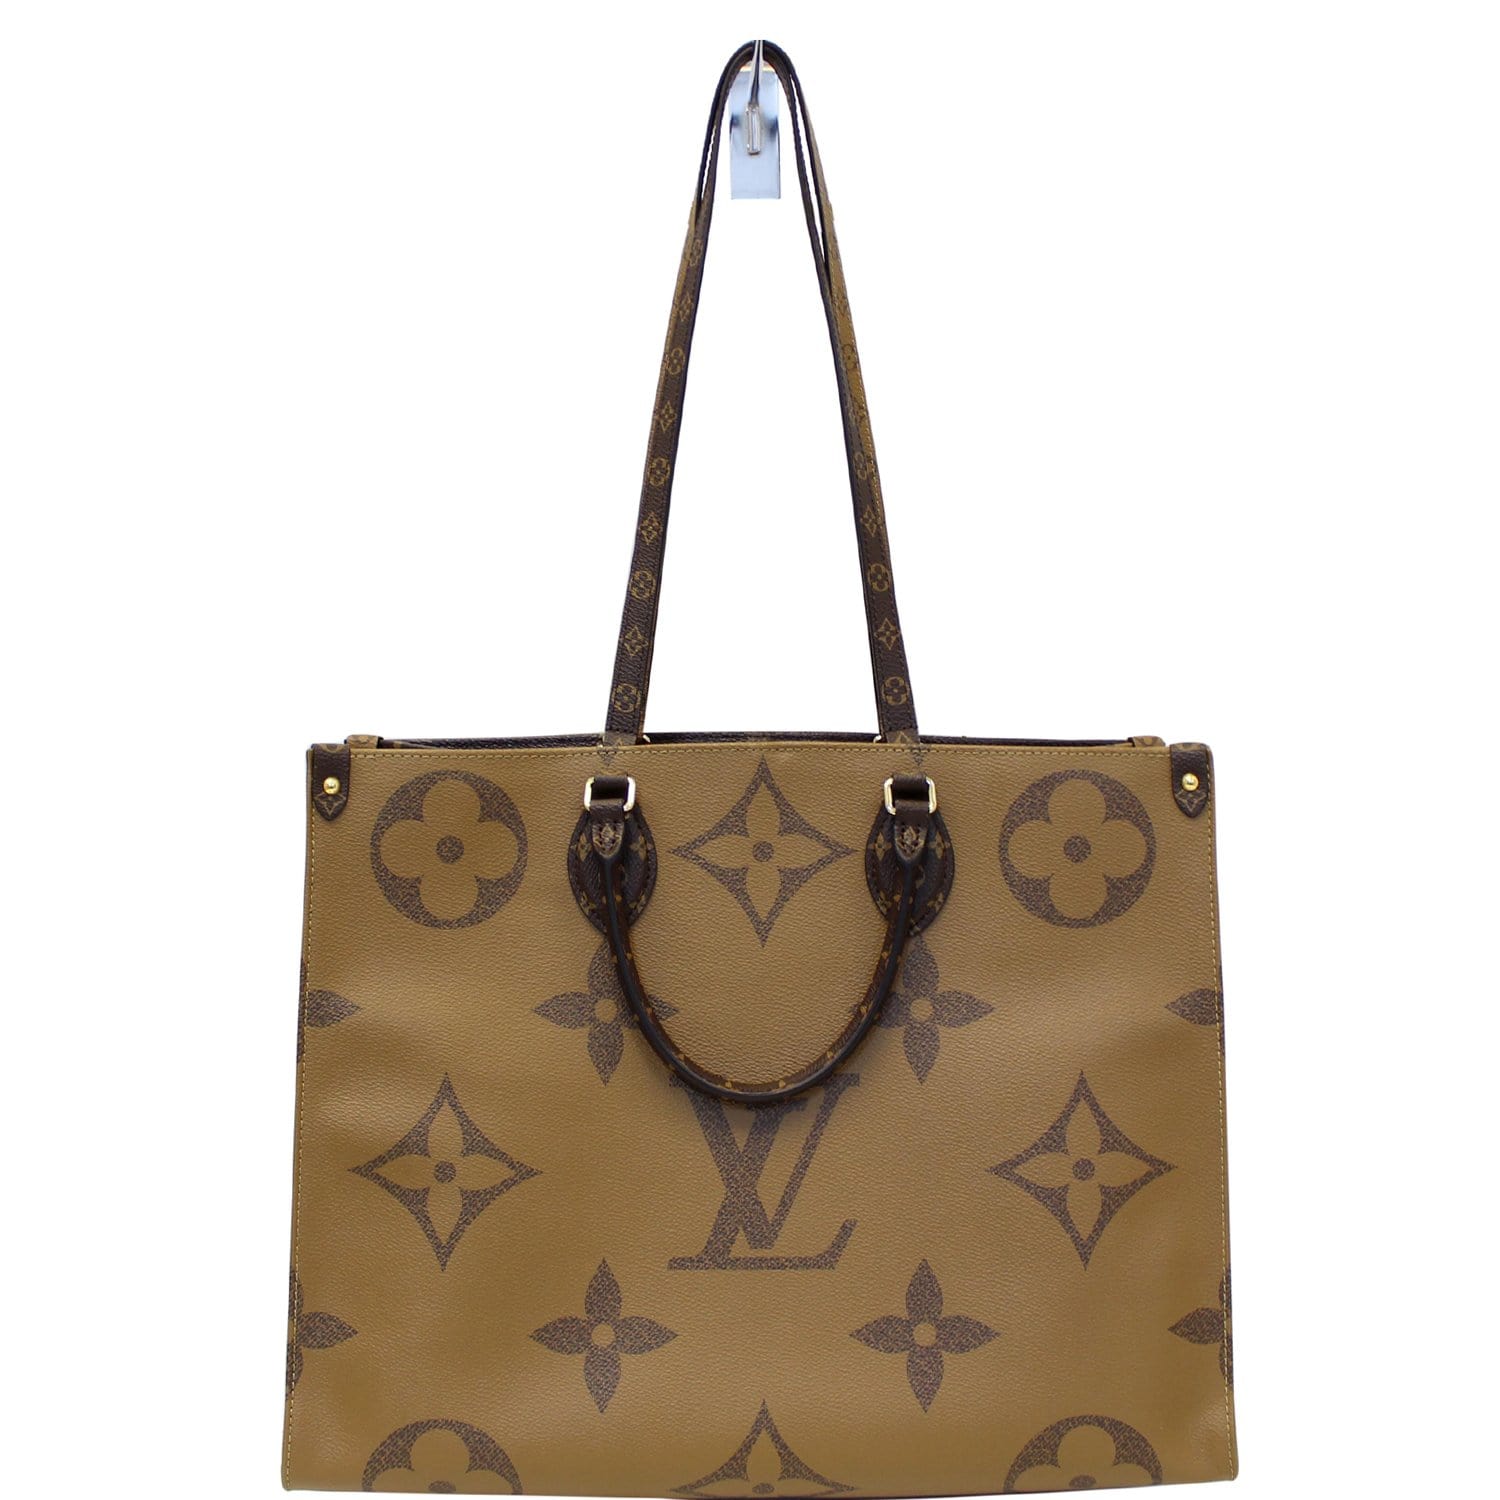 Louis Vuitton Geant Shoulder bag 389449